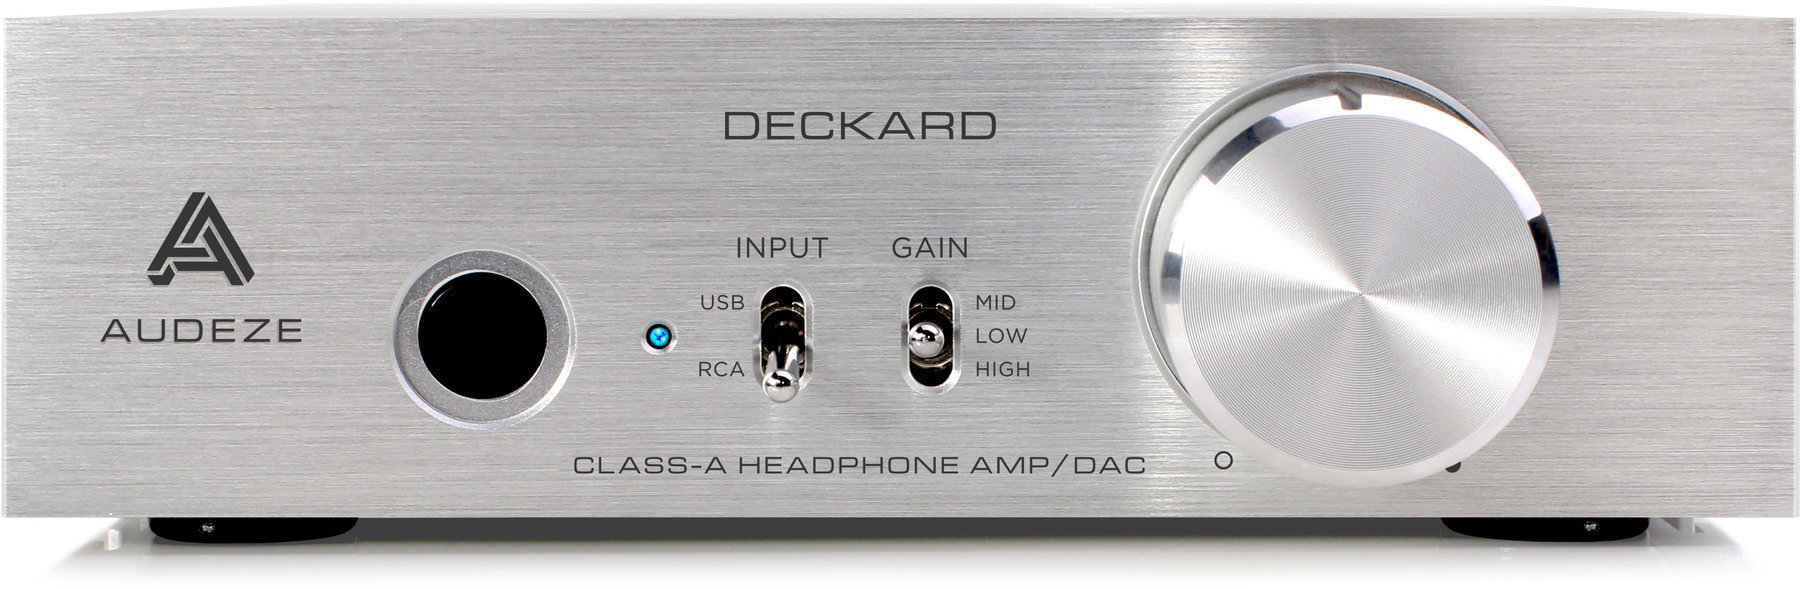 Hi-Fi kuulokkeiden esivahvistin Audeze Deckard